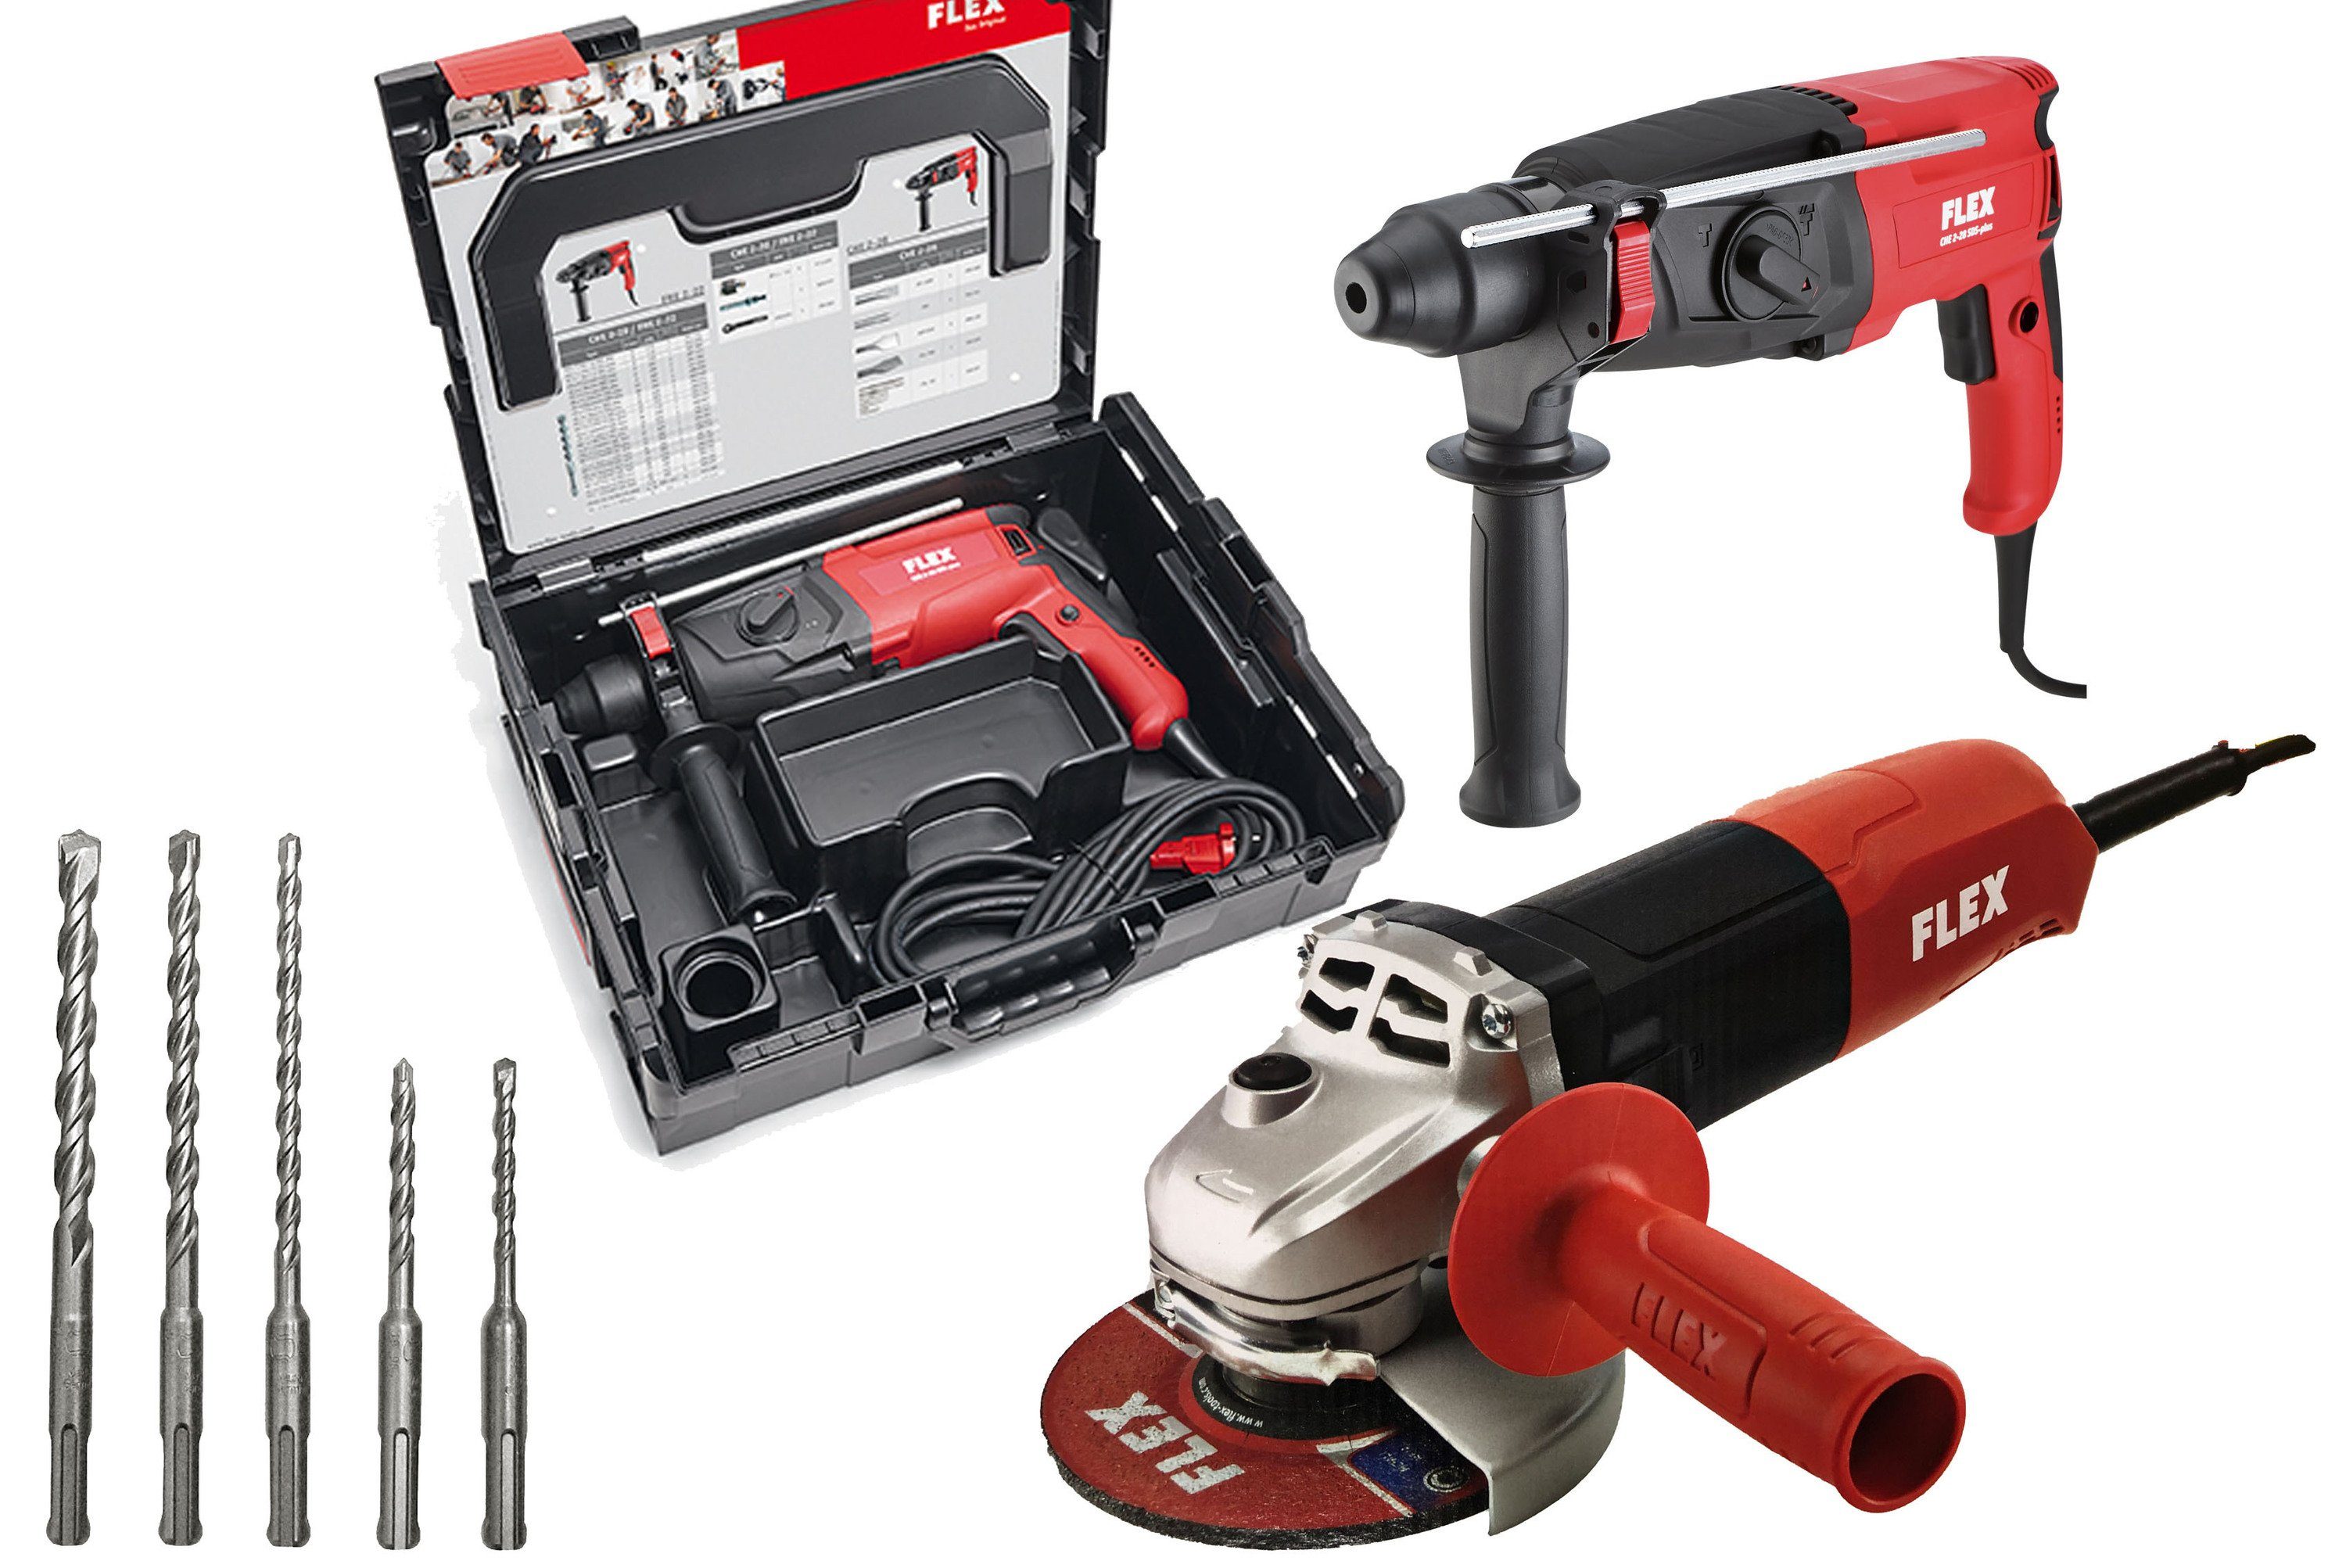 Flex Werkzeugset »CHE 2-28 R«, Bohrhammer und Winkelschleifer mit Bohrerset  + L 811 online kaufen | OTTO